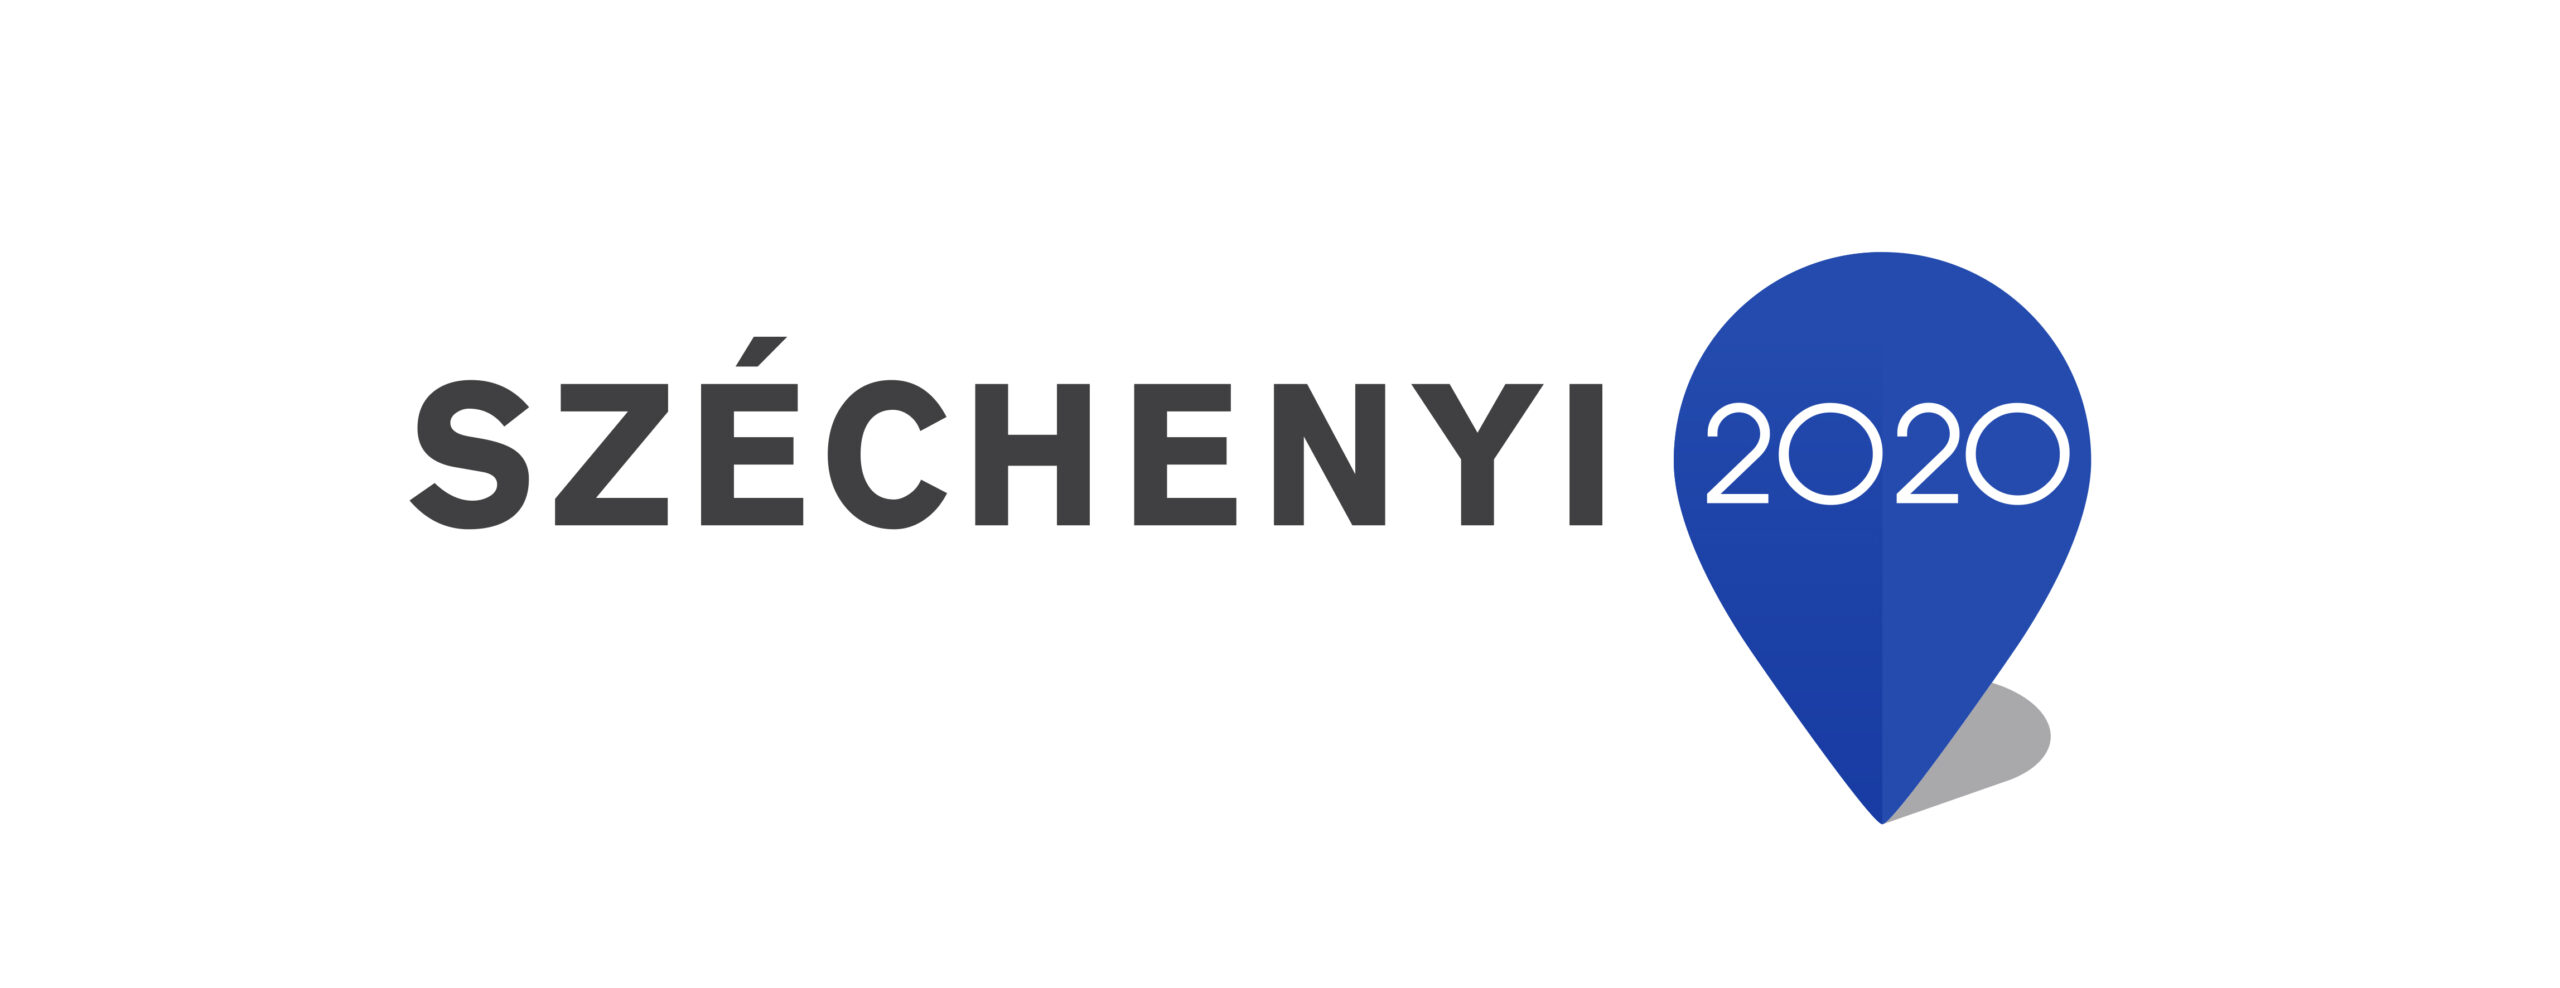 Széchenyi 2020 logó - kicsi